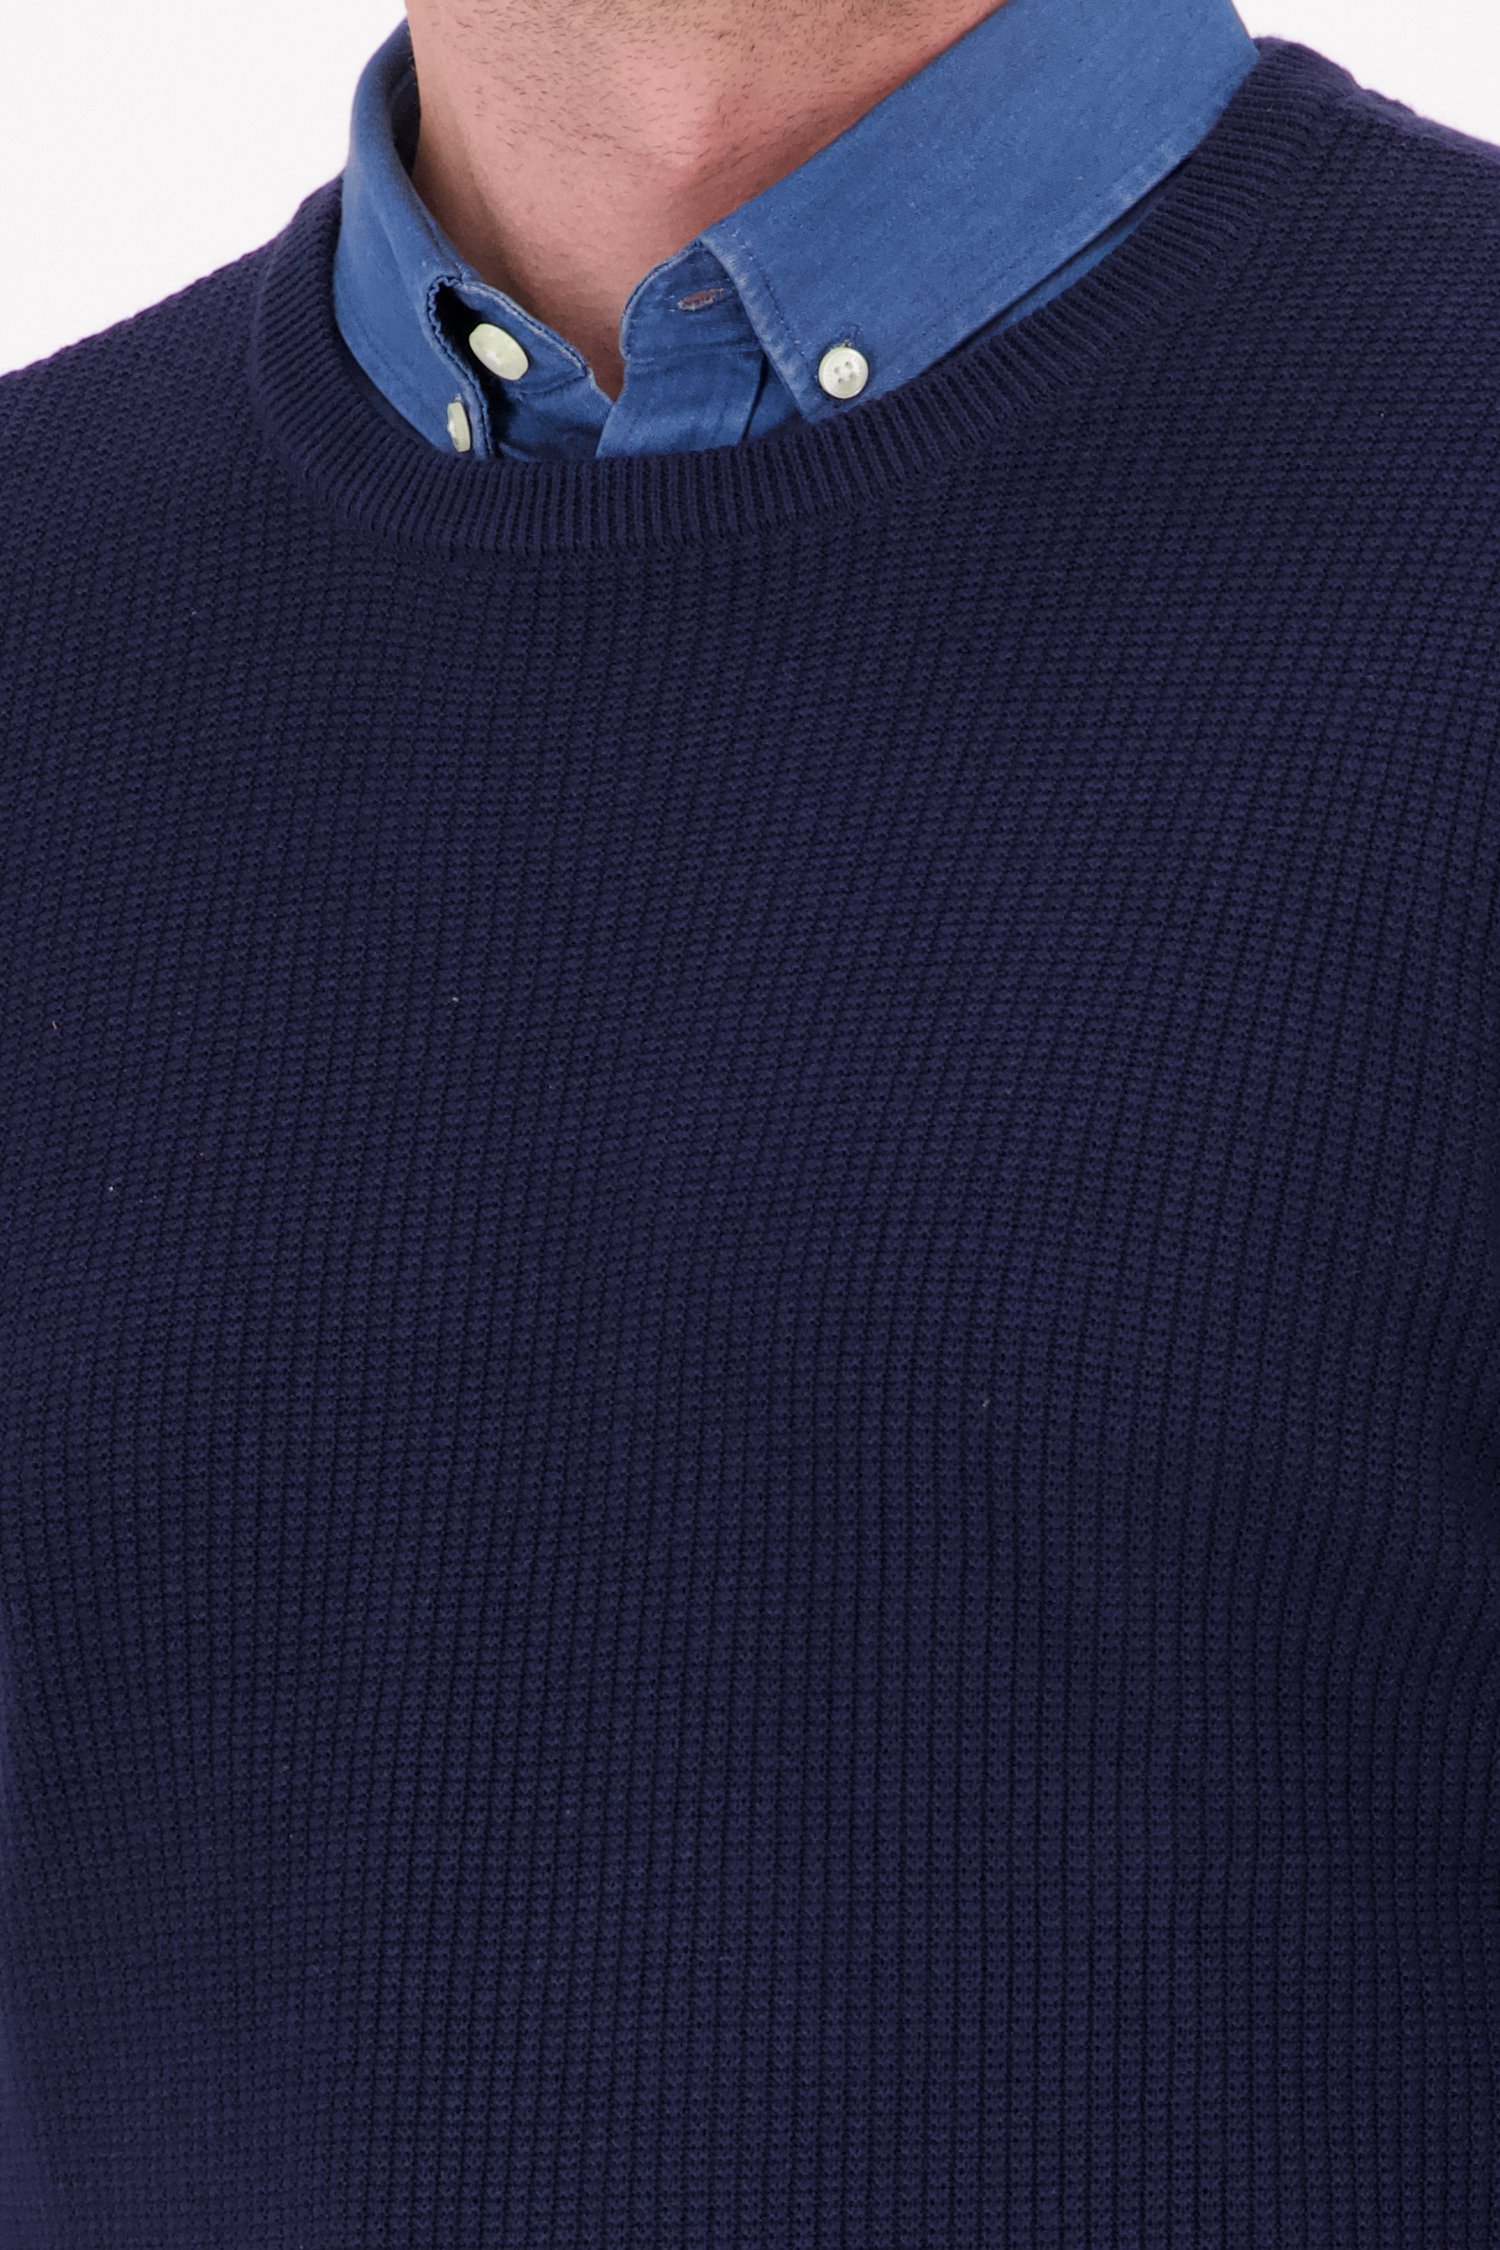 Donkerblauwe trui van Casual Friday voor Heren